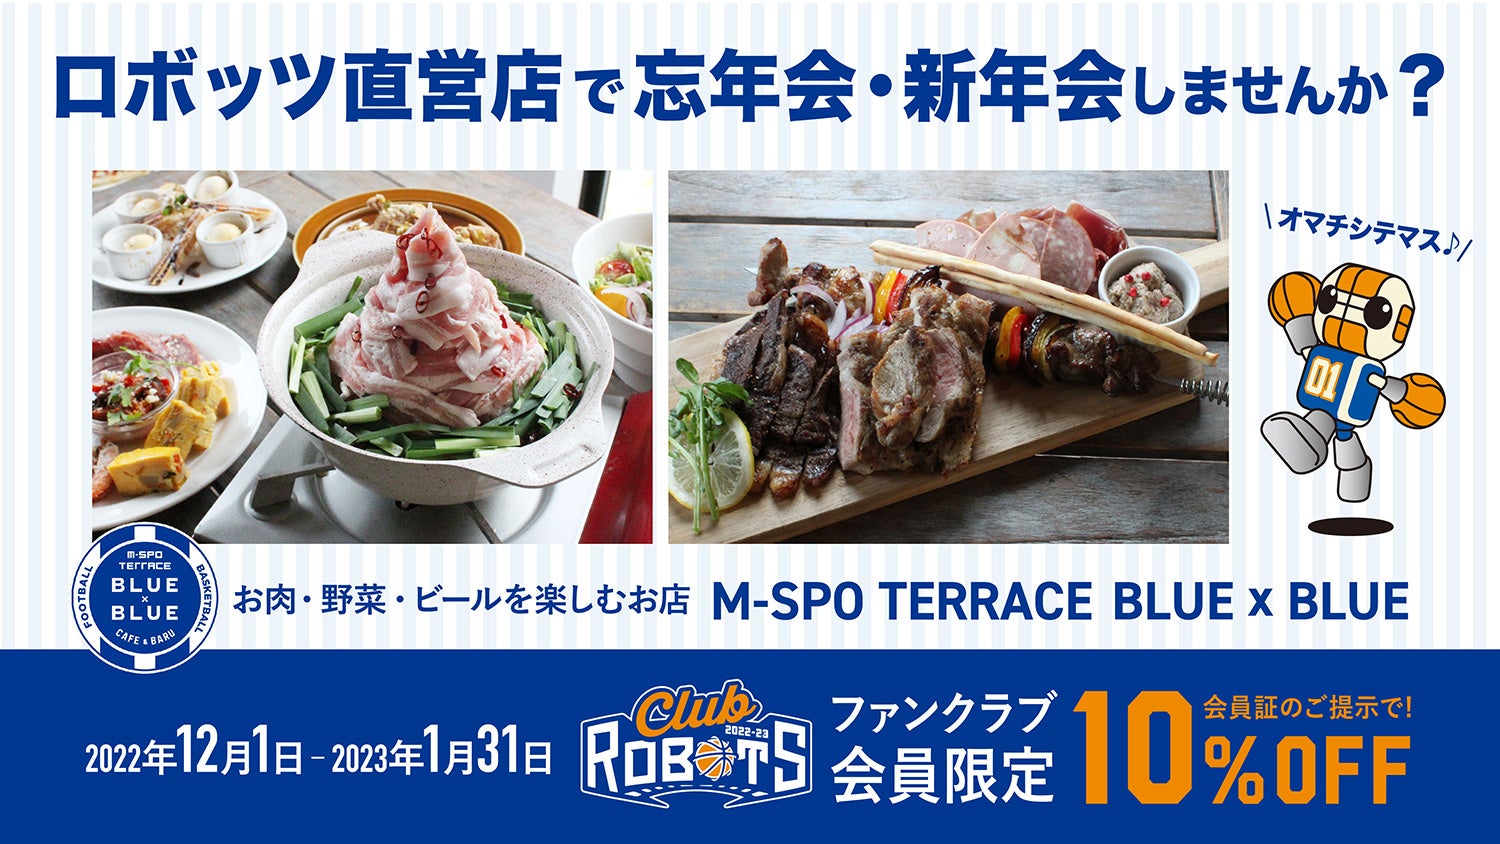 ロボッツ直営店「M-SPO TERRACE BLUE × BLUE」で忘年会や新年会をしませんか？
